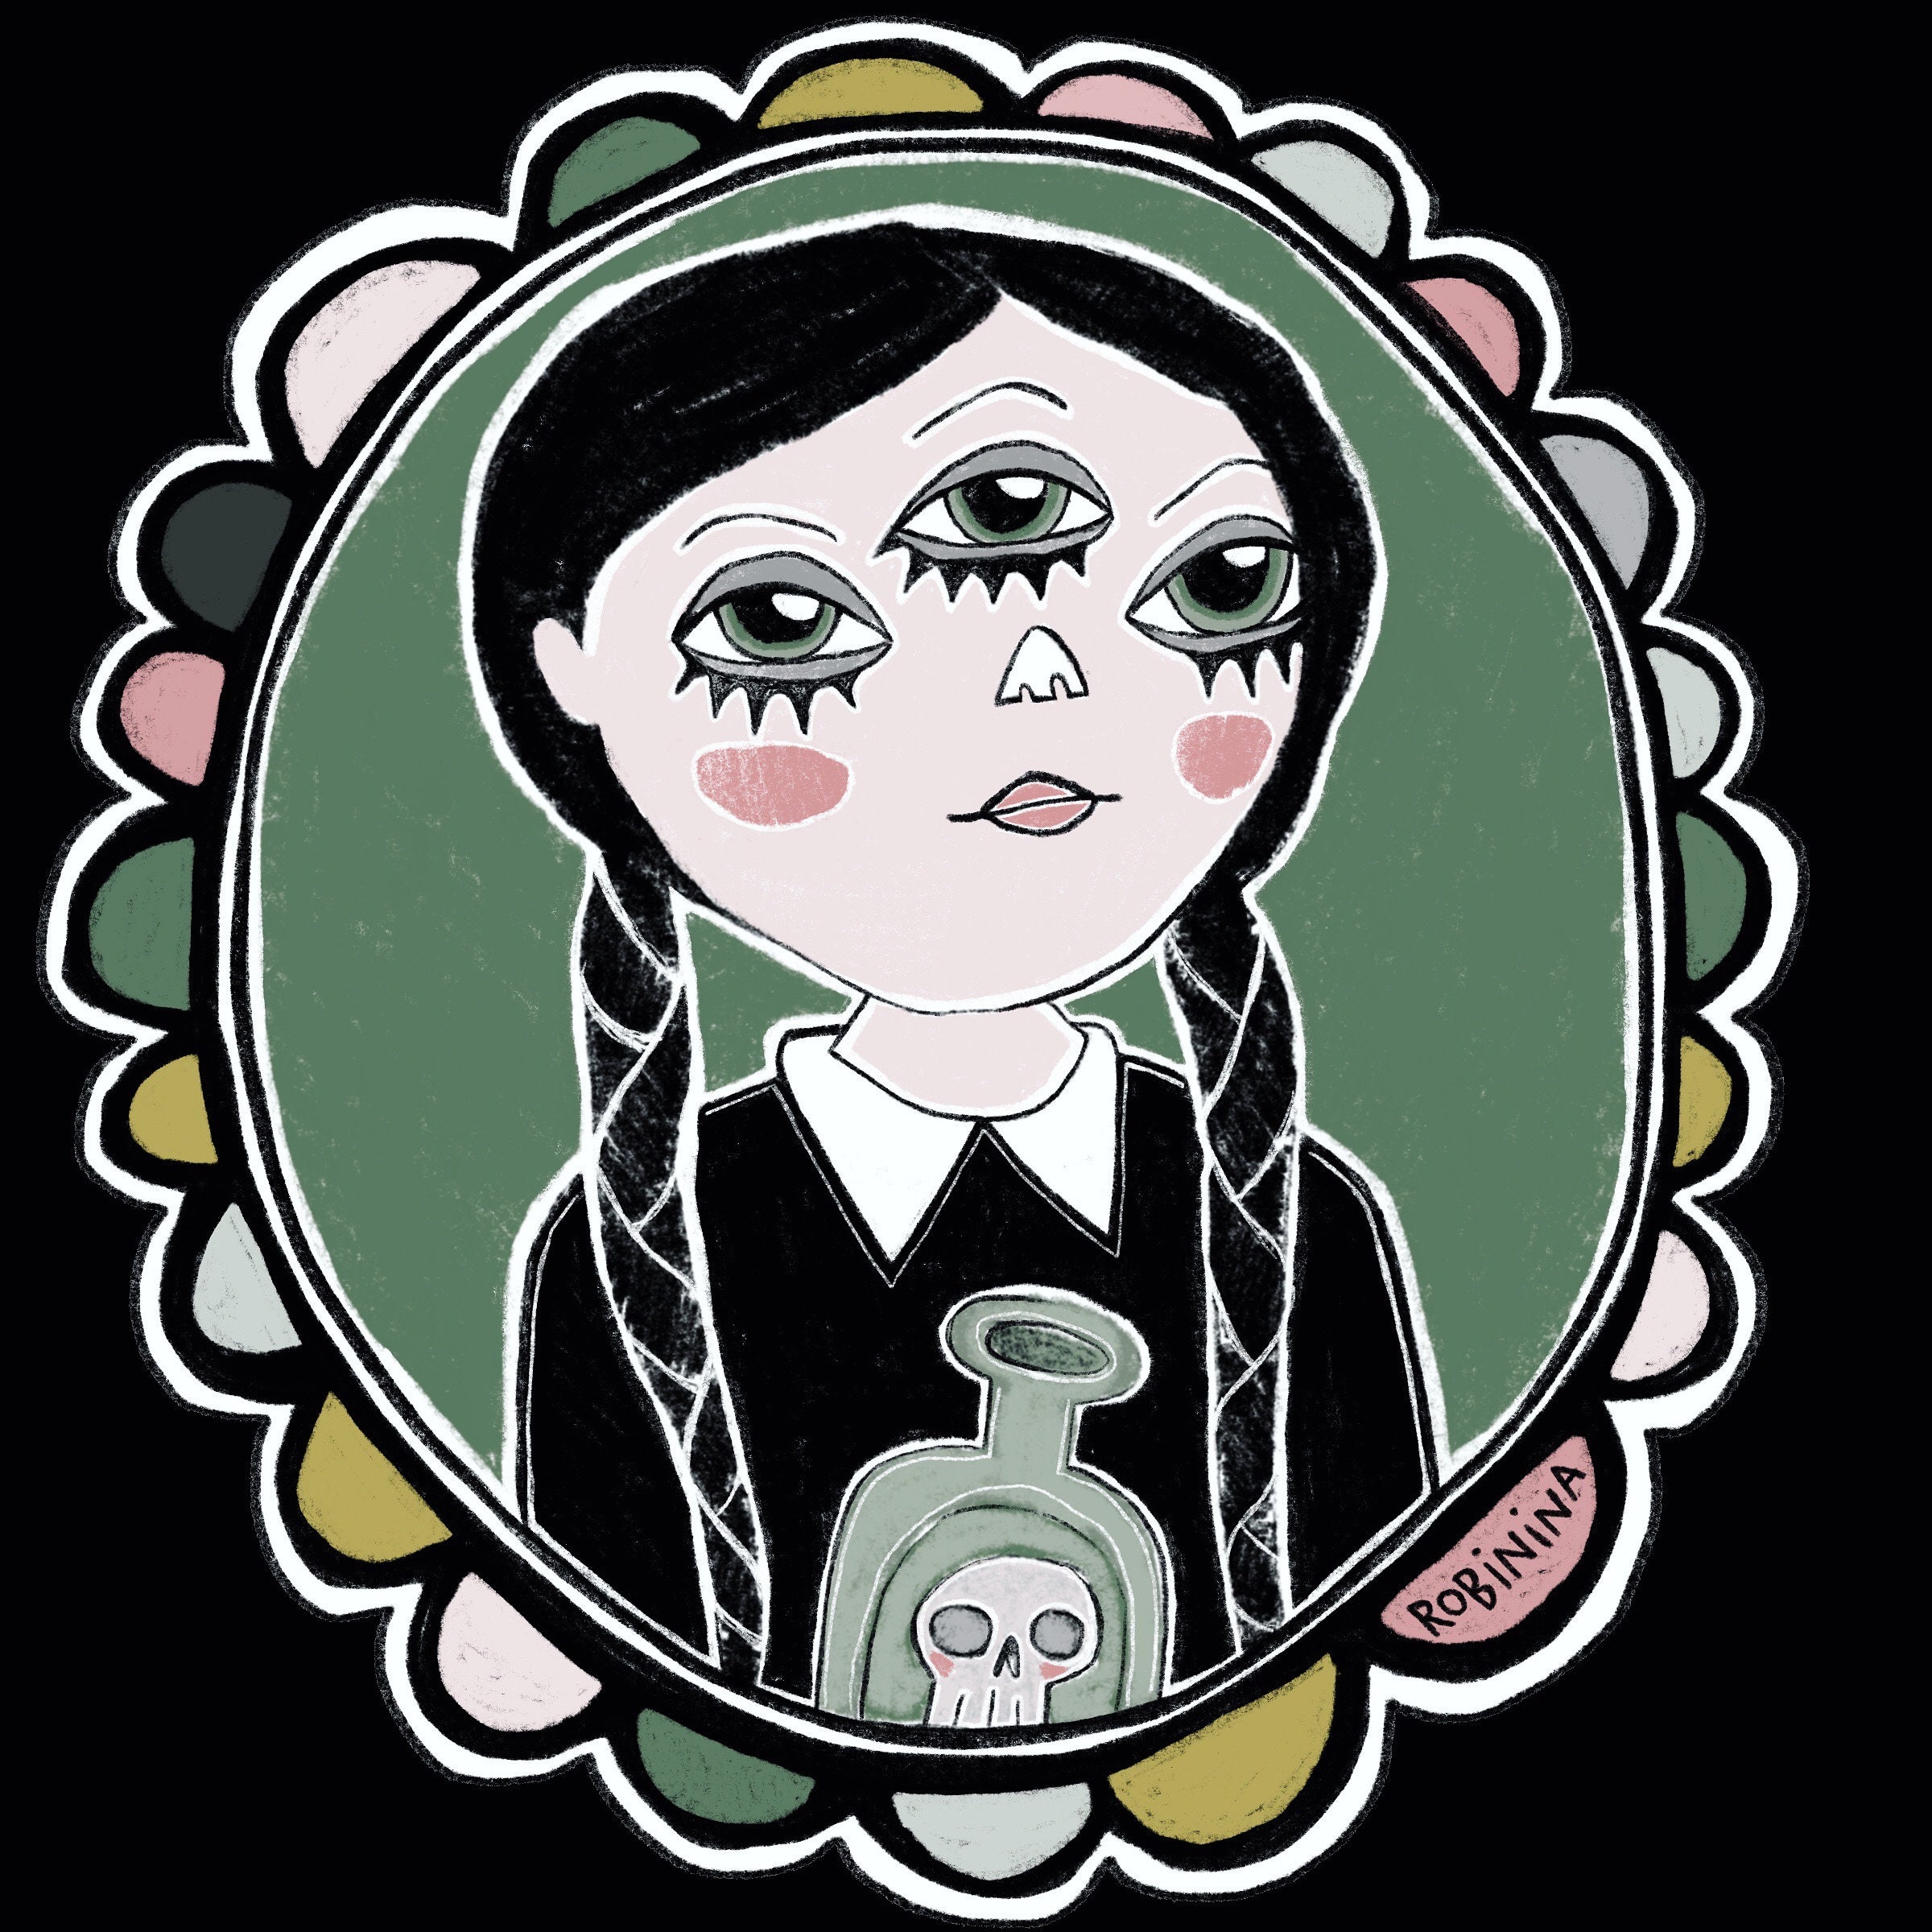 Wednesday Addams third eye sticker | Etsy